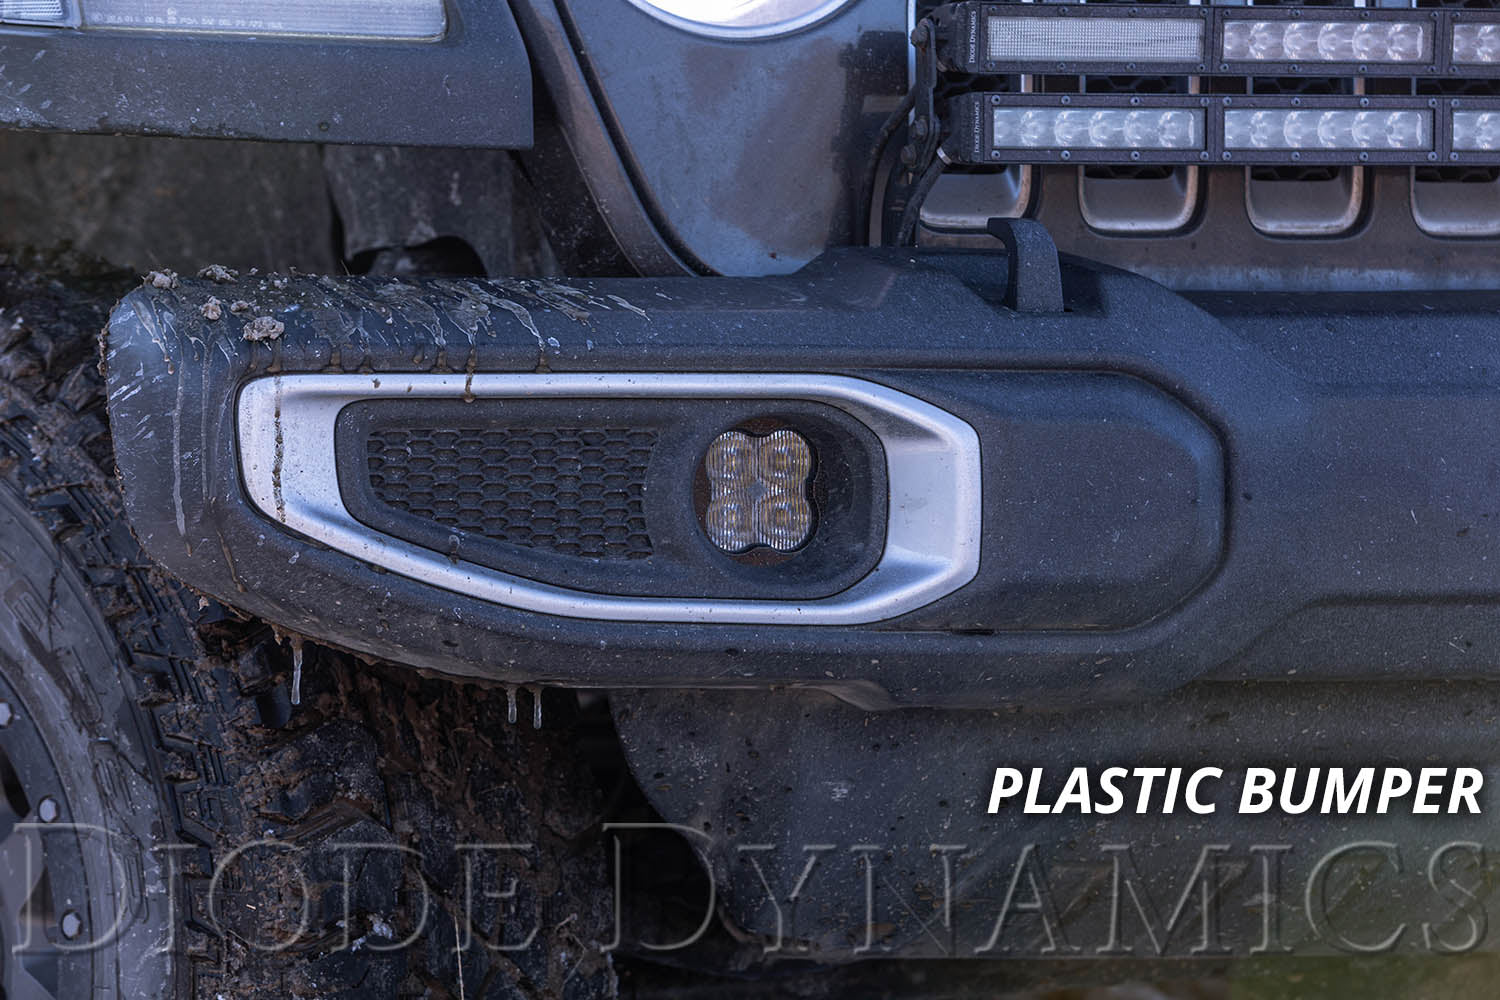 SS3 LED Fog Light Kit for 2020-2021 Jeep Gladiator White SAE Fog Max w/ Backlight Type M Bracket Kit Diode Dynamics